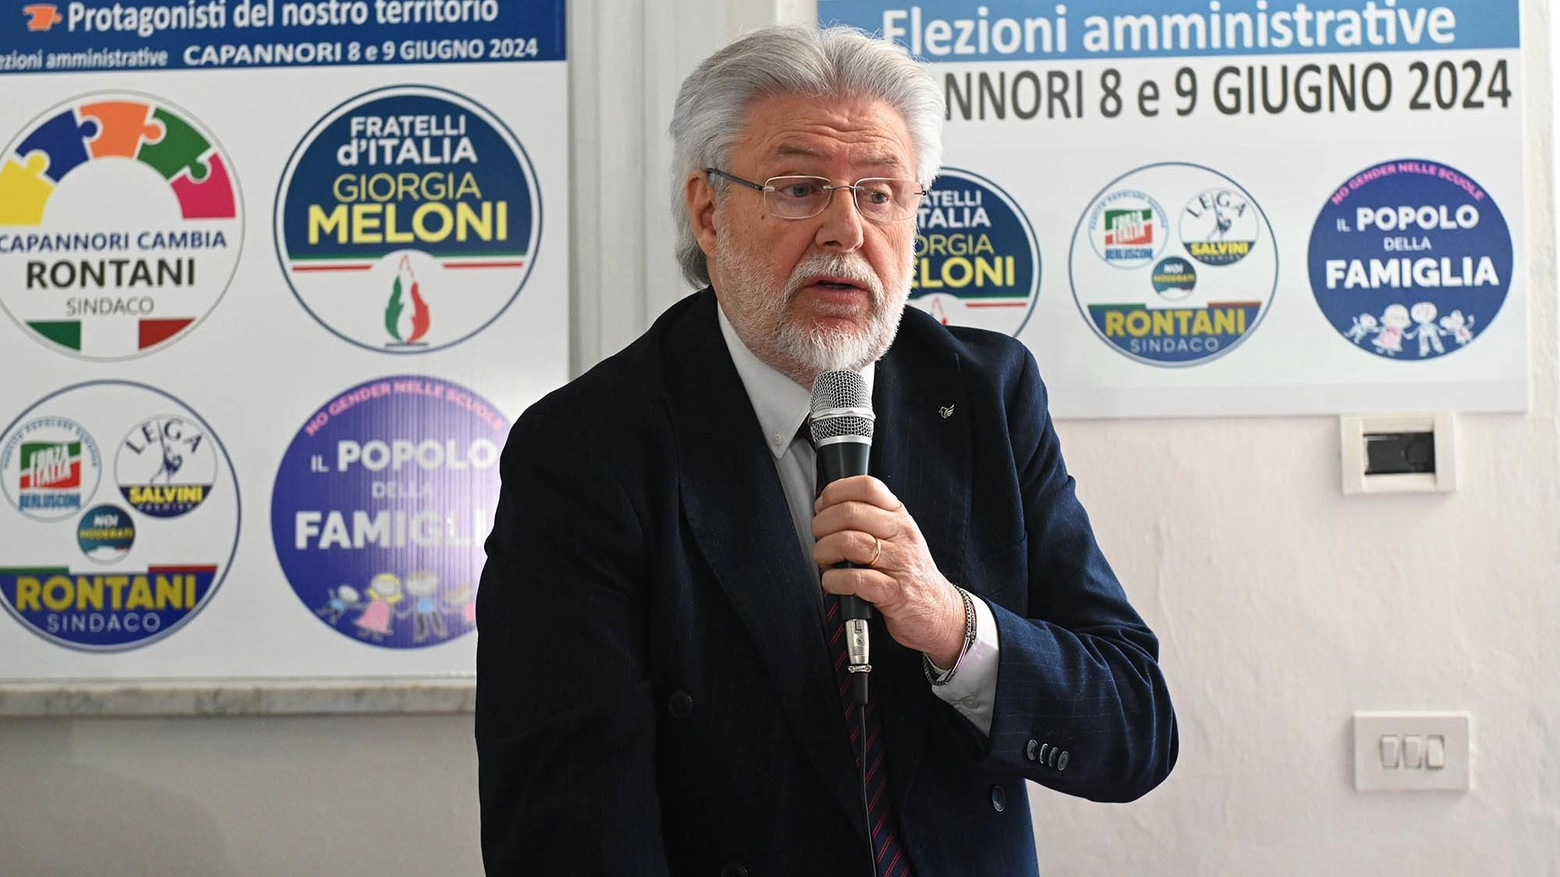 Il candidato della lista “Capannori Cambia“, appoggiato dalla coalizione di centrodestra, lancia la volata in vista delle prossime amministrative.